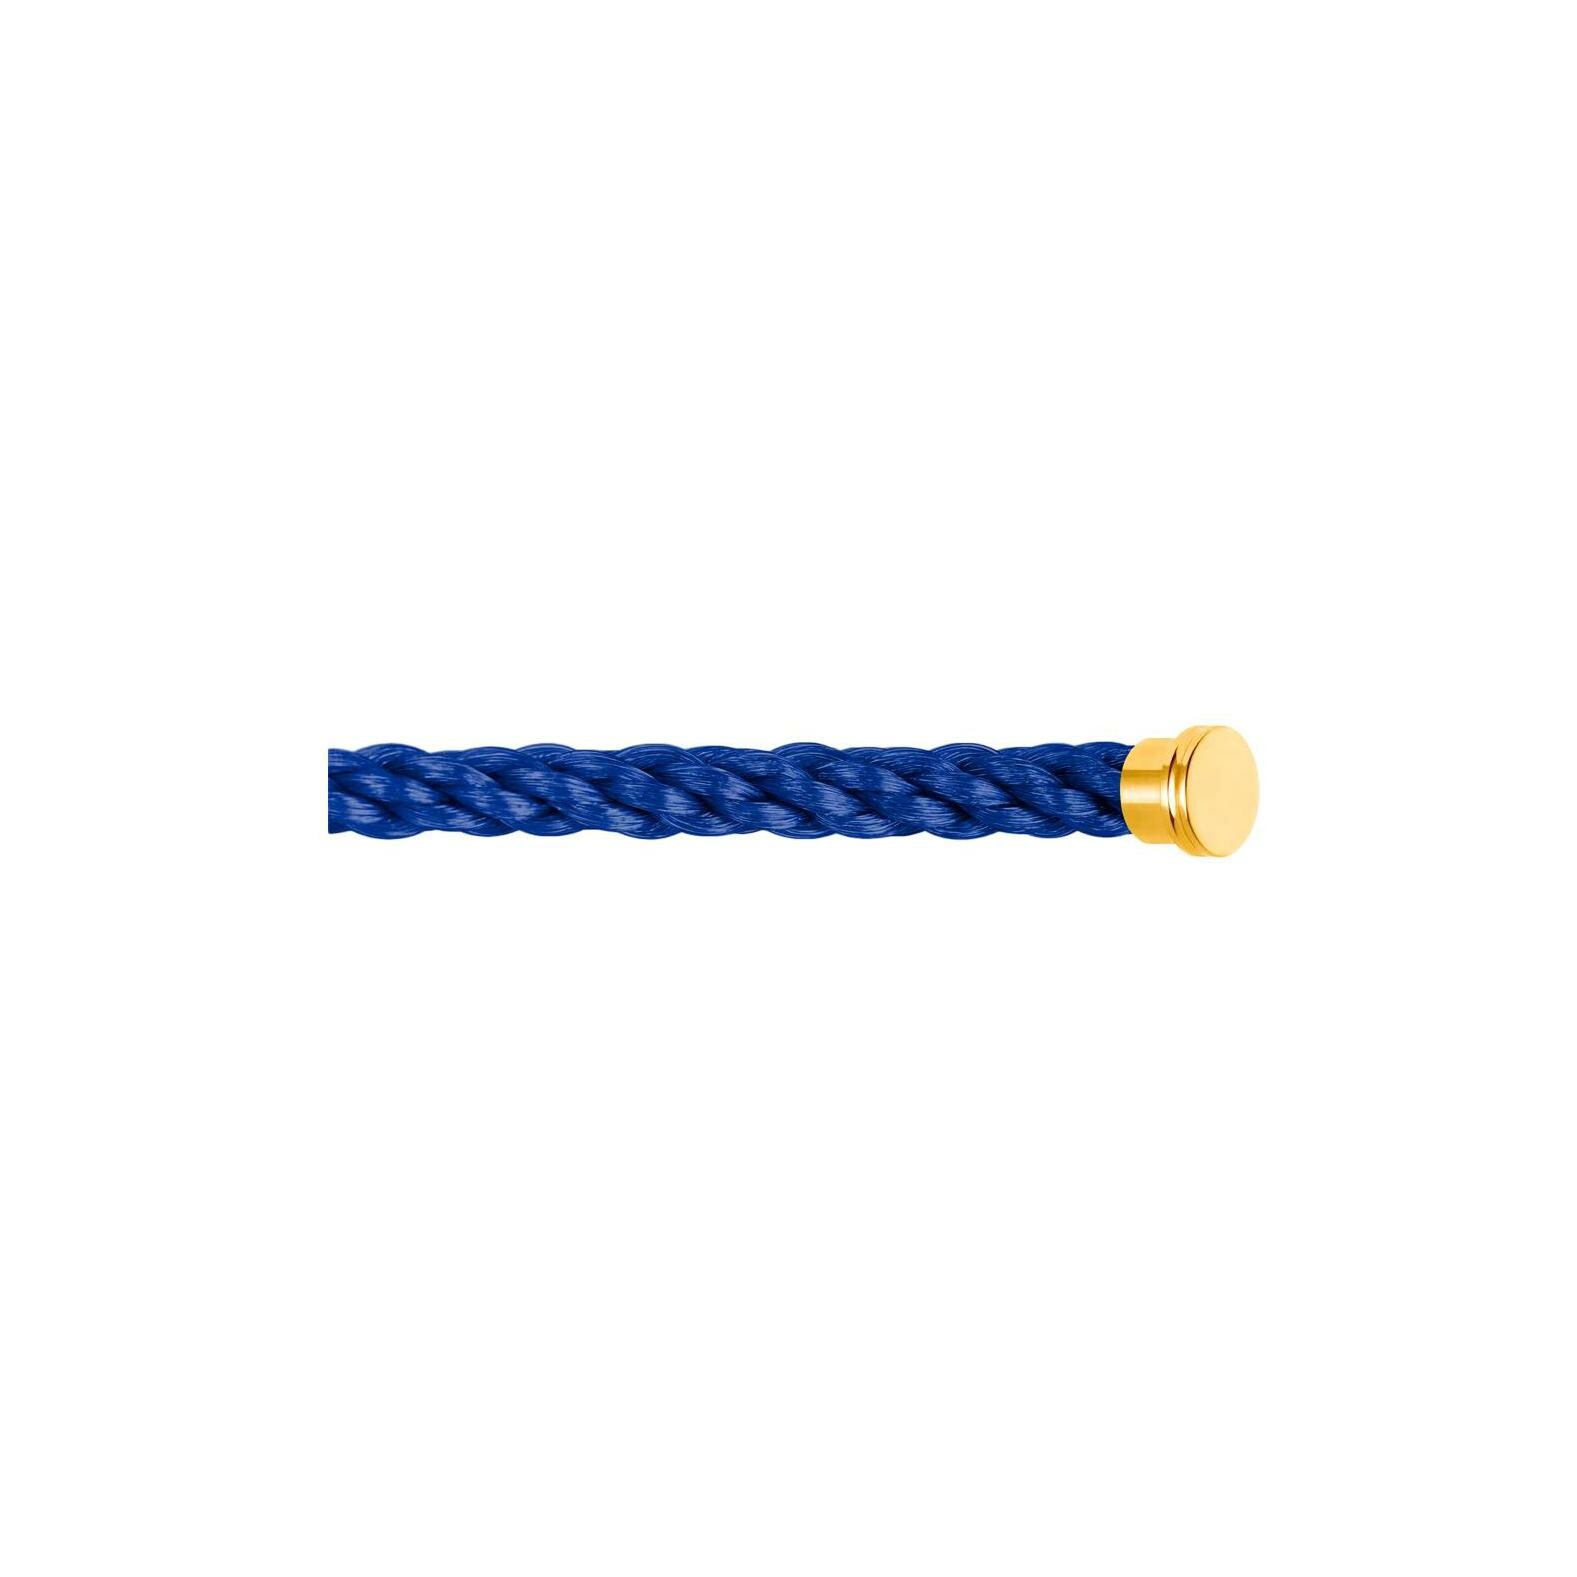 Câble pour bracelet FRED GM en corderie bleue indigo avec embout en or jaune vue 1